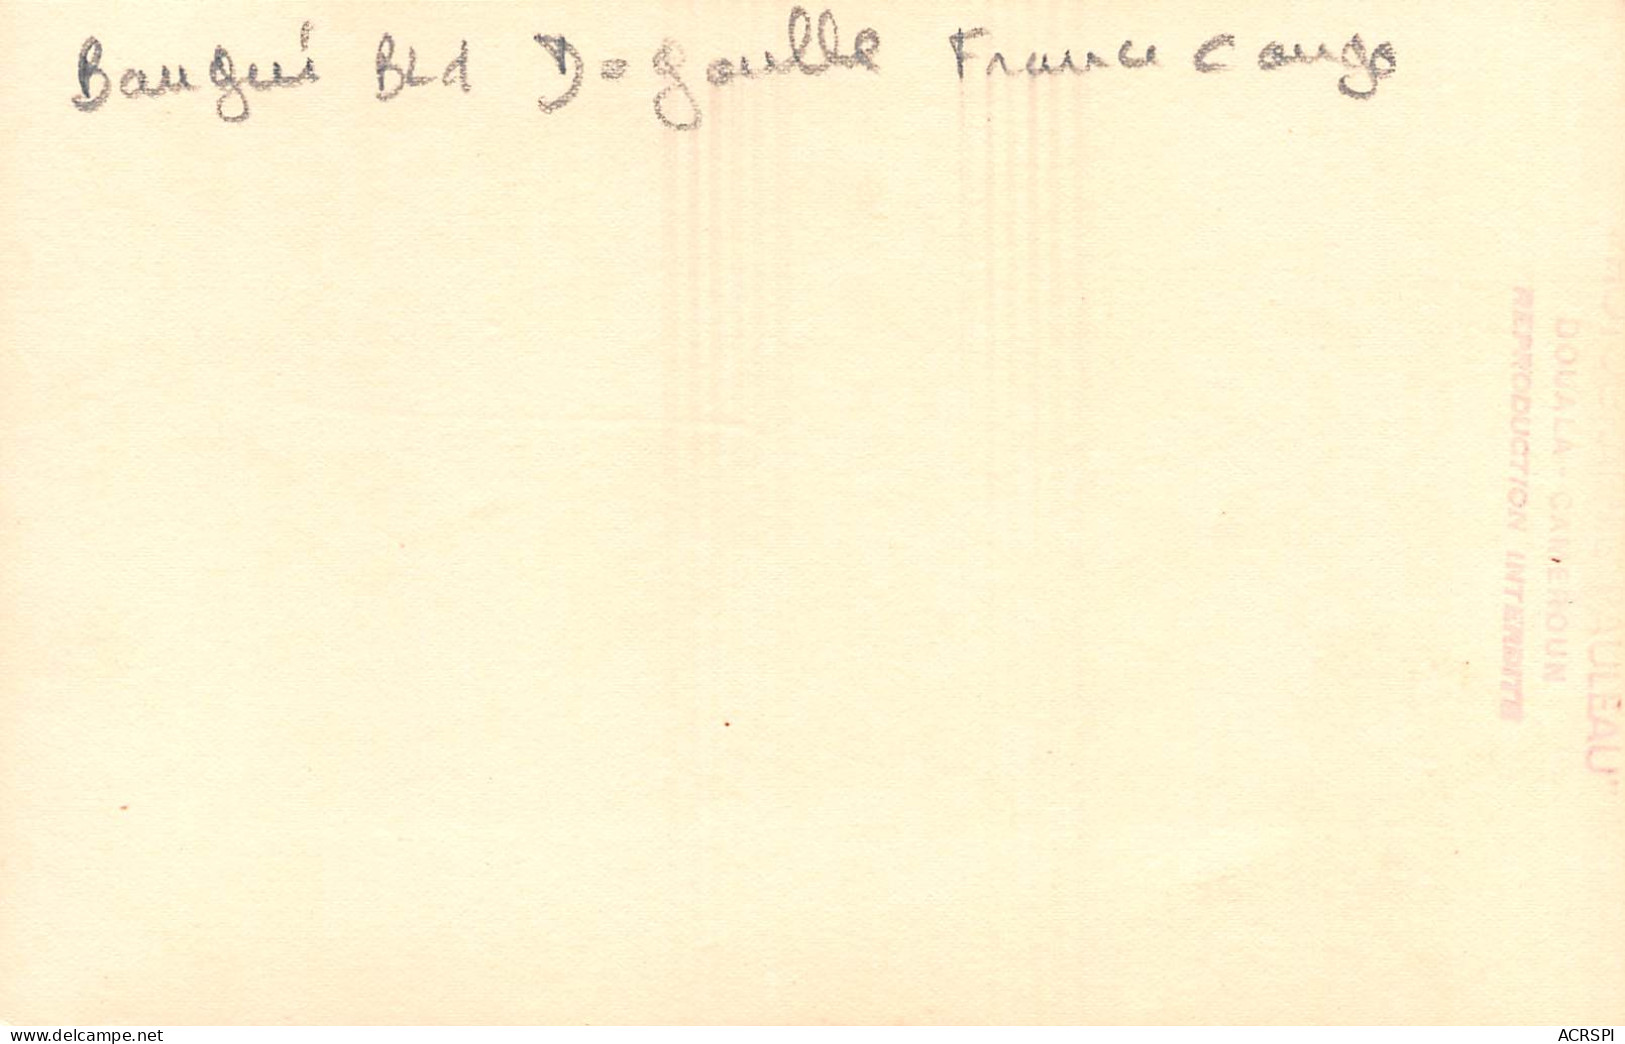 BANGUI République Centrafricaine France Congo Bld De Gaulle Photo PAULEA Non Circulé (Scan R/V) N° 53 \MP7121 - Zentralafrik. Republik